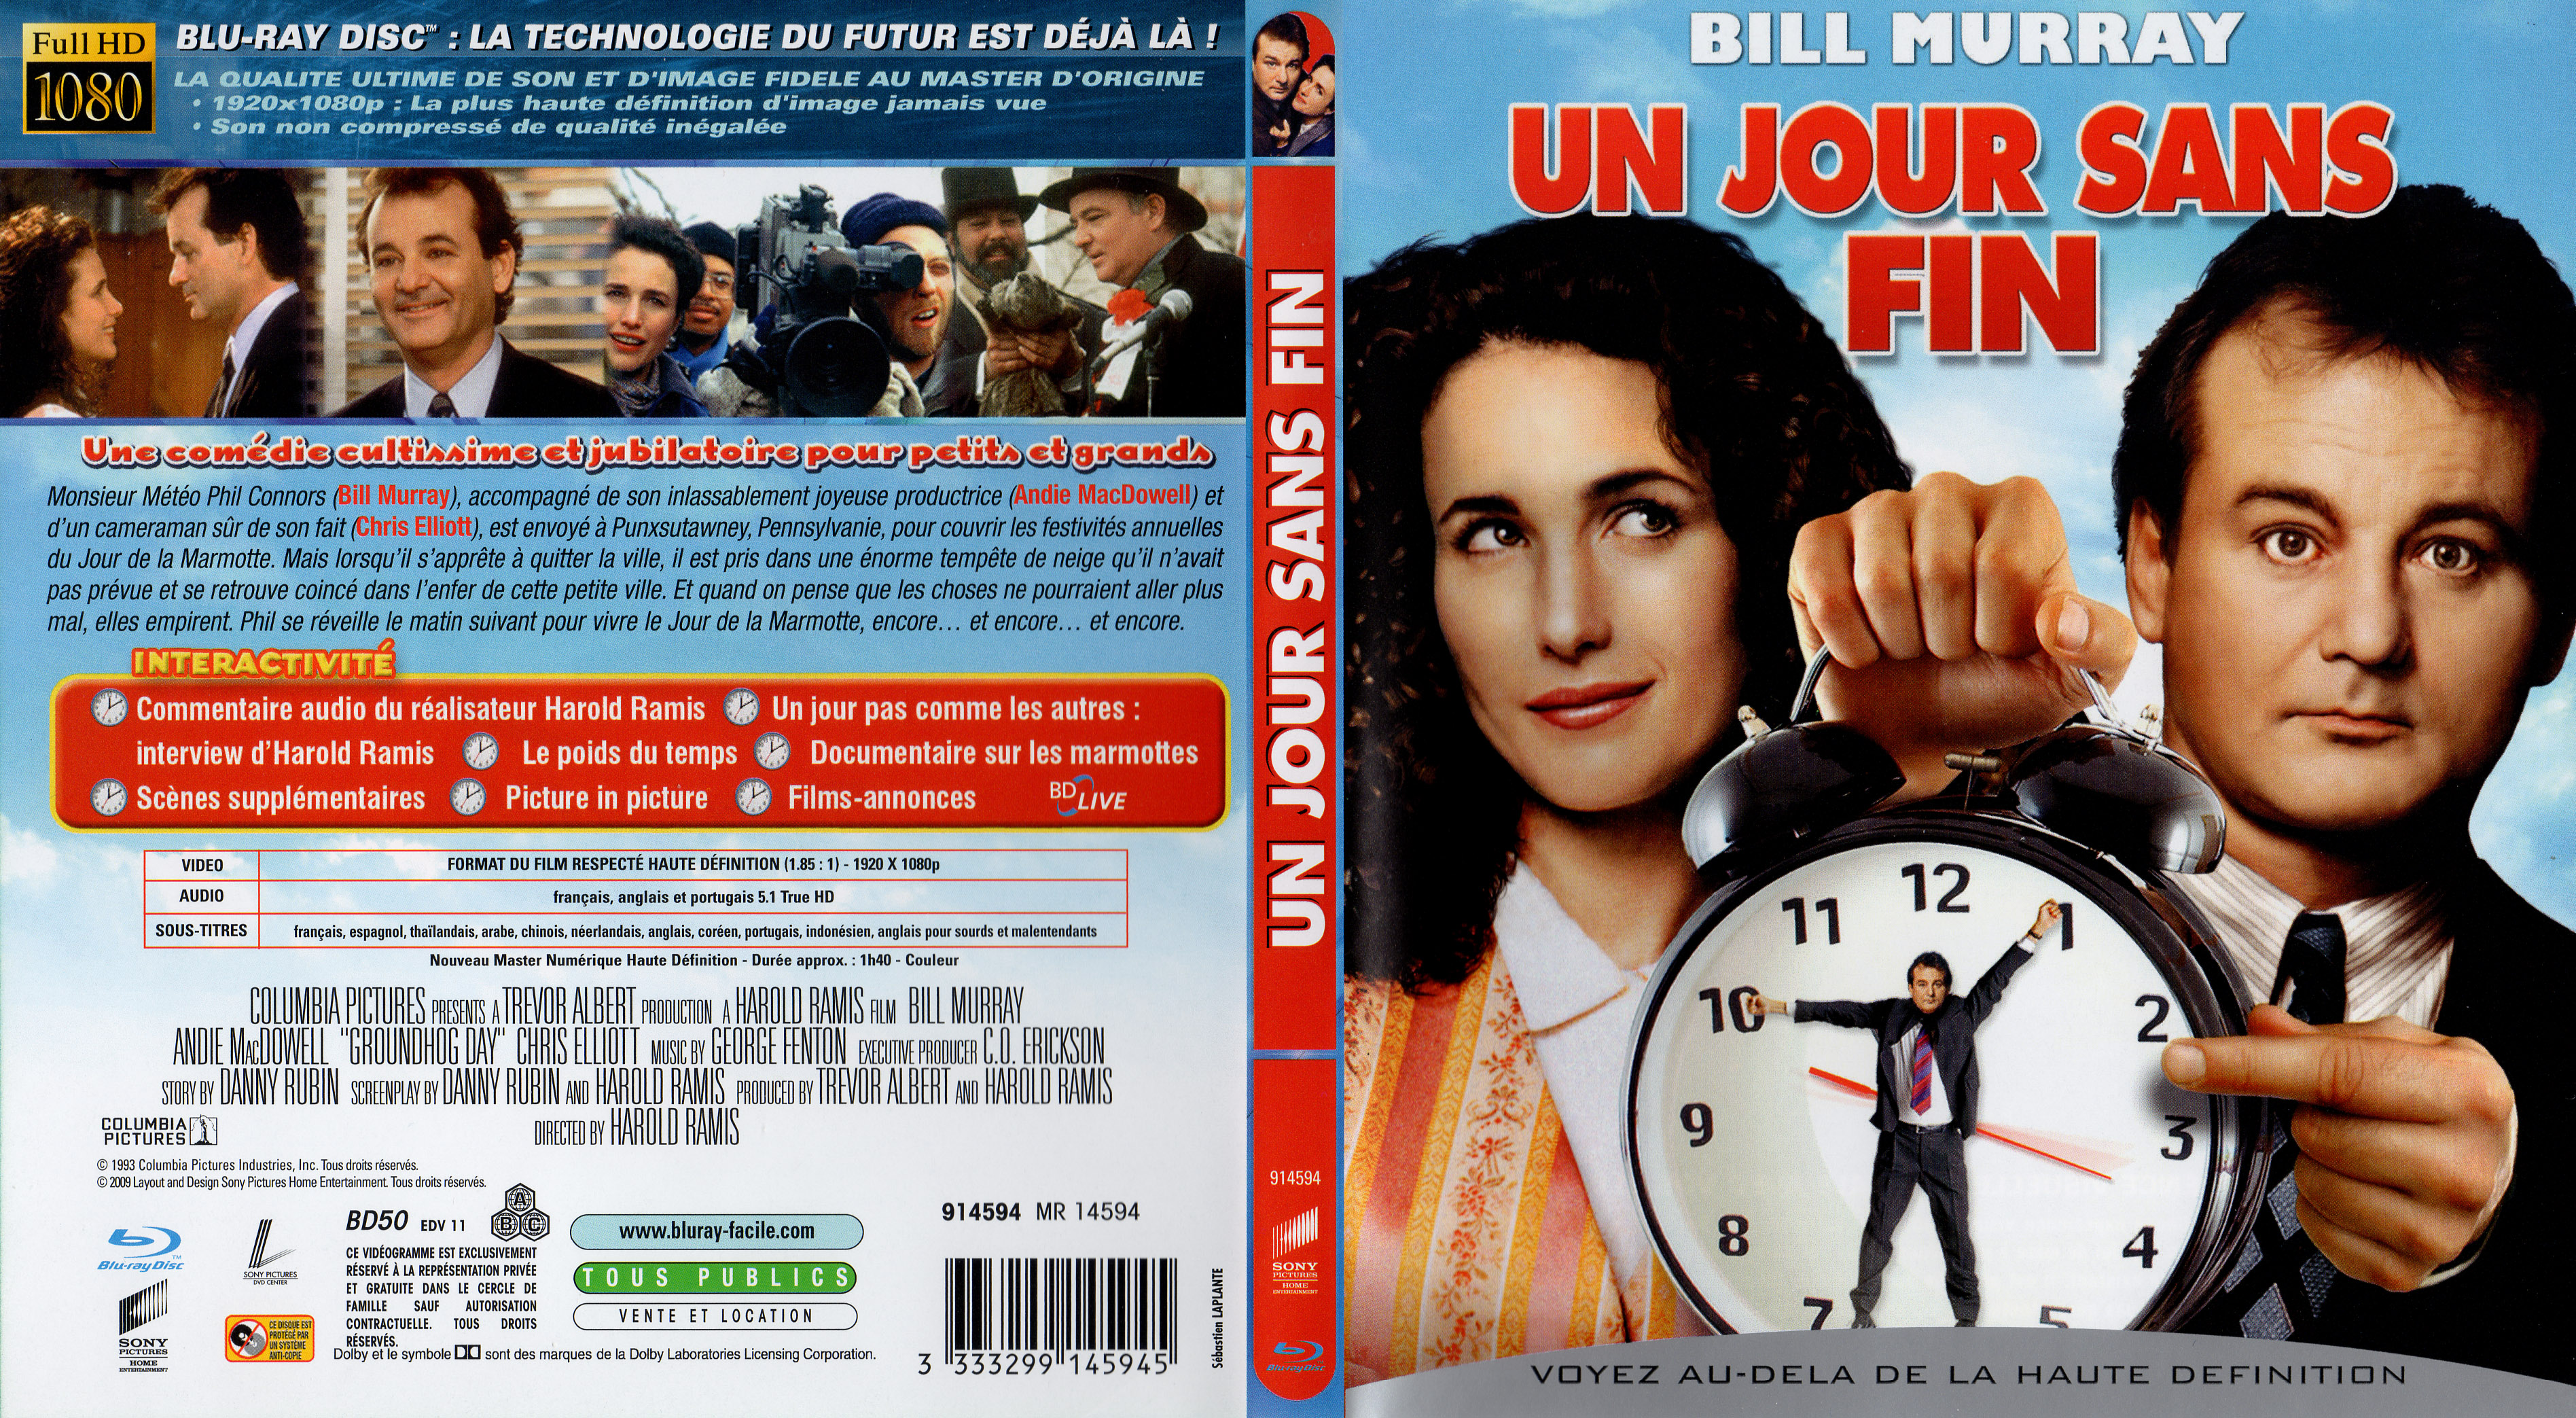 Jaquette DVD Un jour sans fin (BLU-RAY)